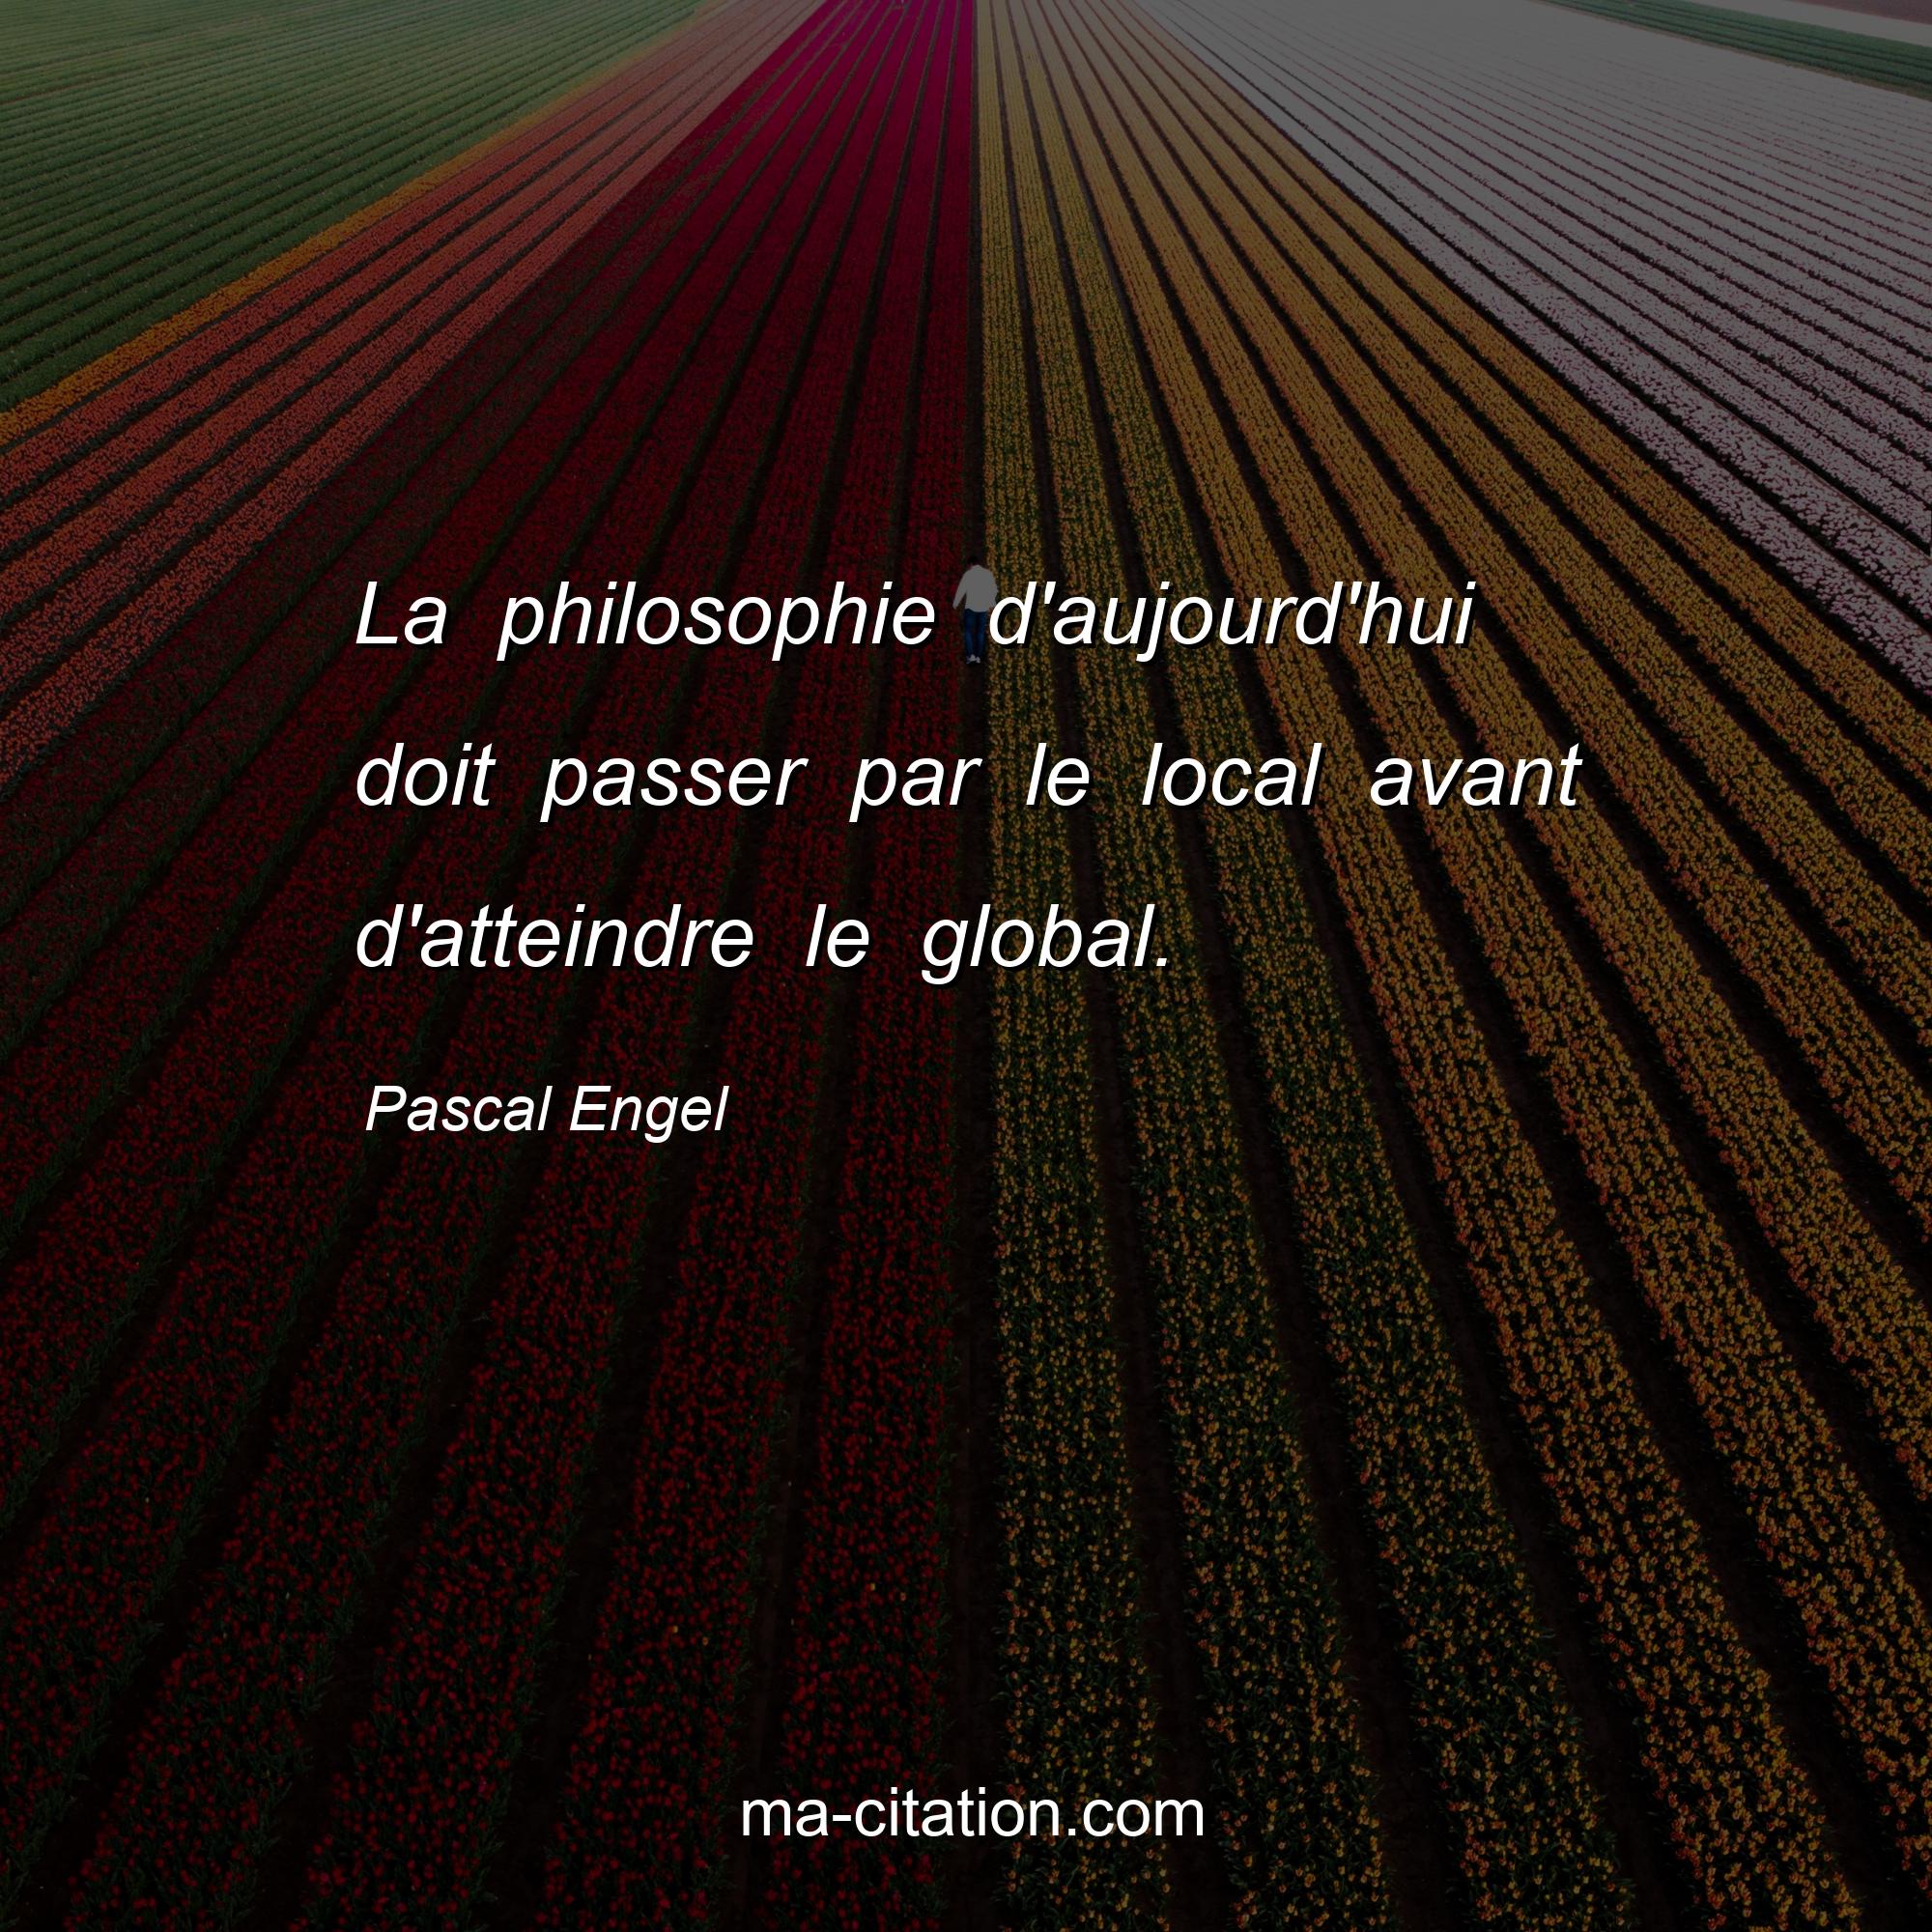 Pascal Engel : La philosophie d'aujourd'hui doit passer par le local avant d'atteindre le global.